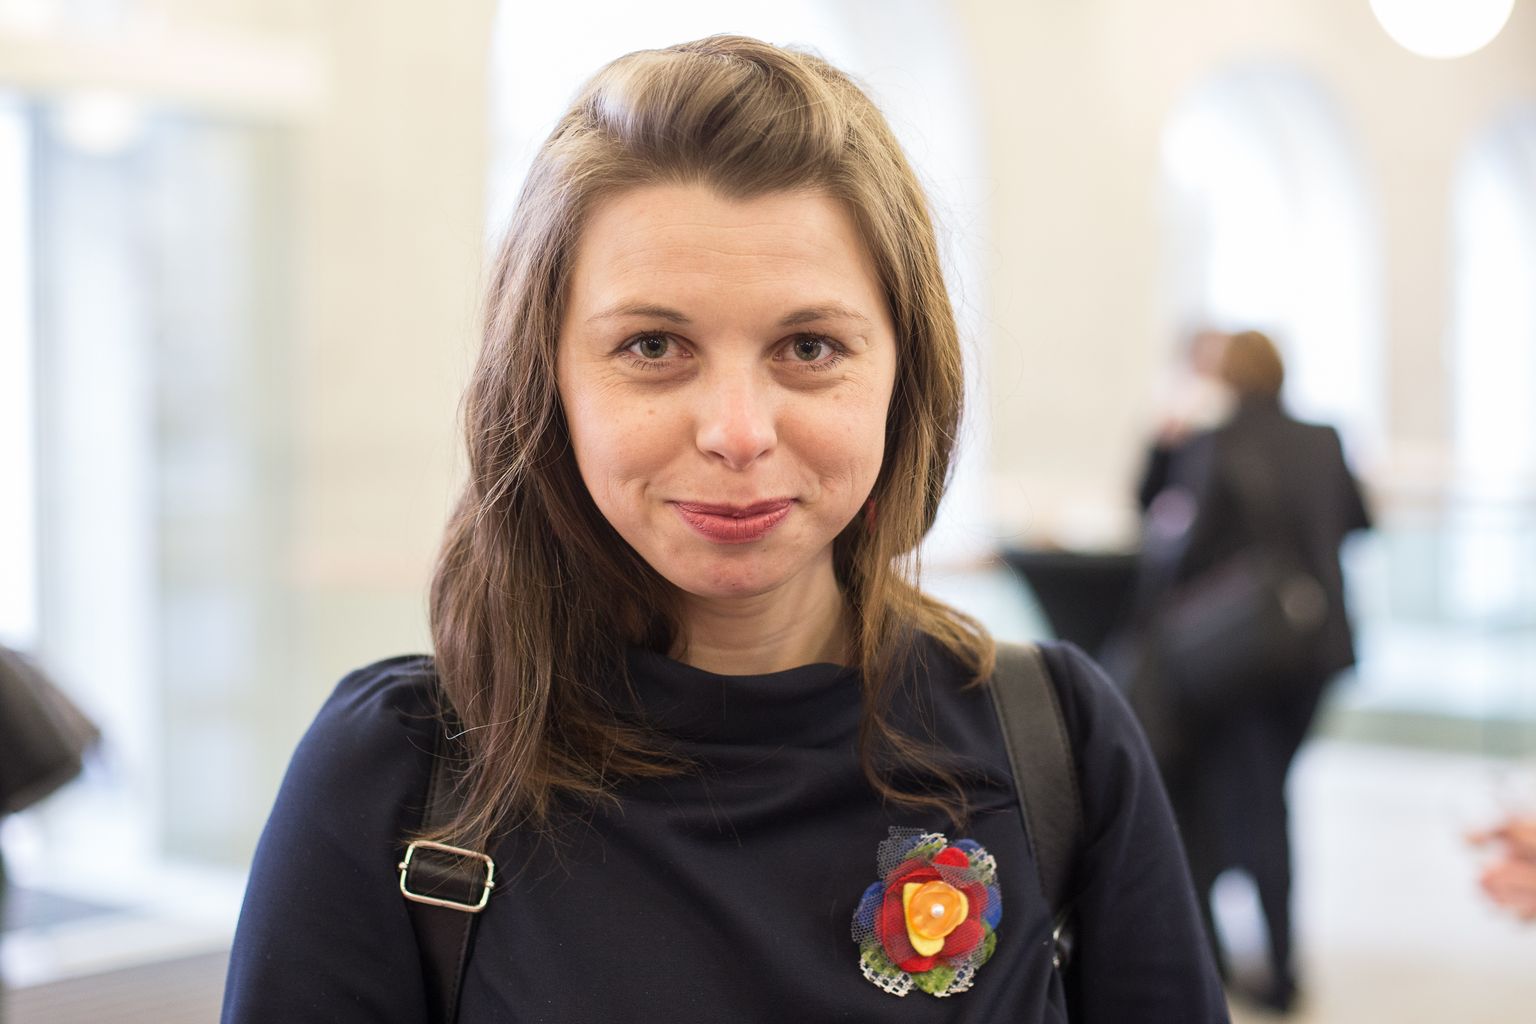 Kerda Eiert, Ida-Viru haridusklastri Hariduskopter koordinaator, eestikeelse hariduse tegevuskava töörühma liige